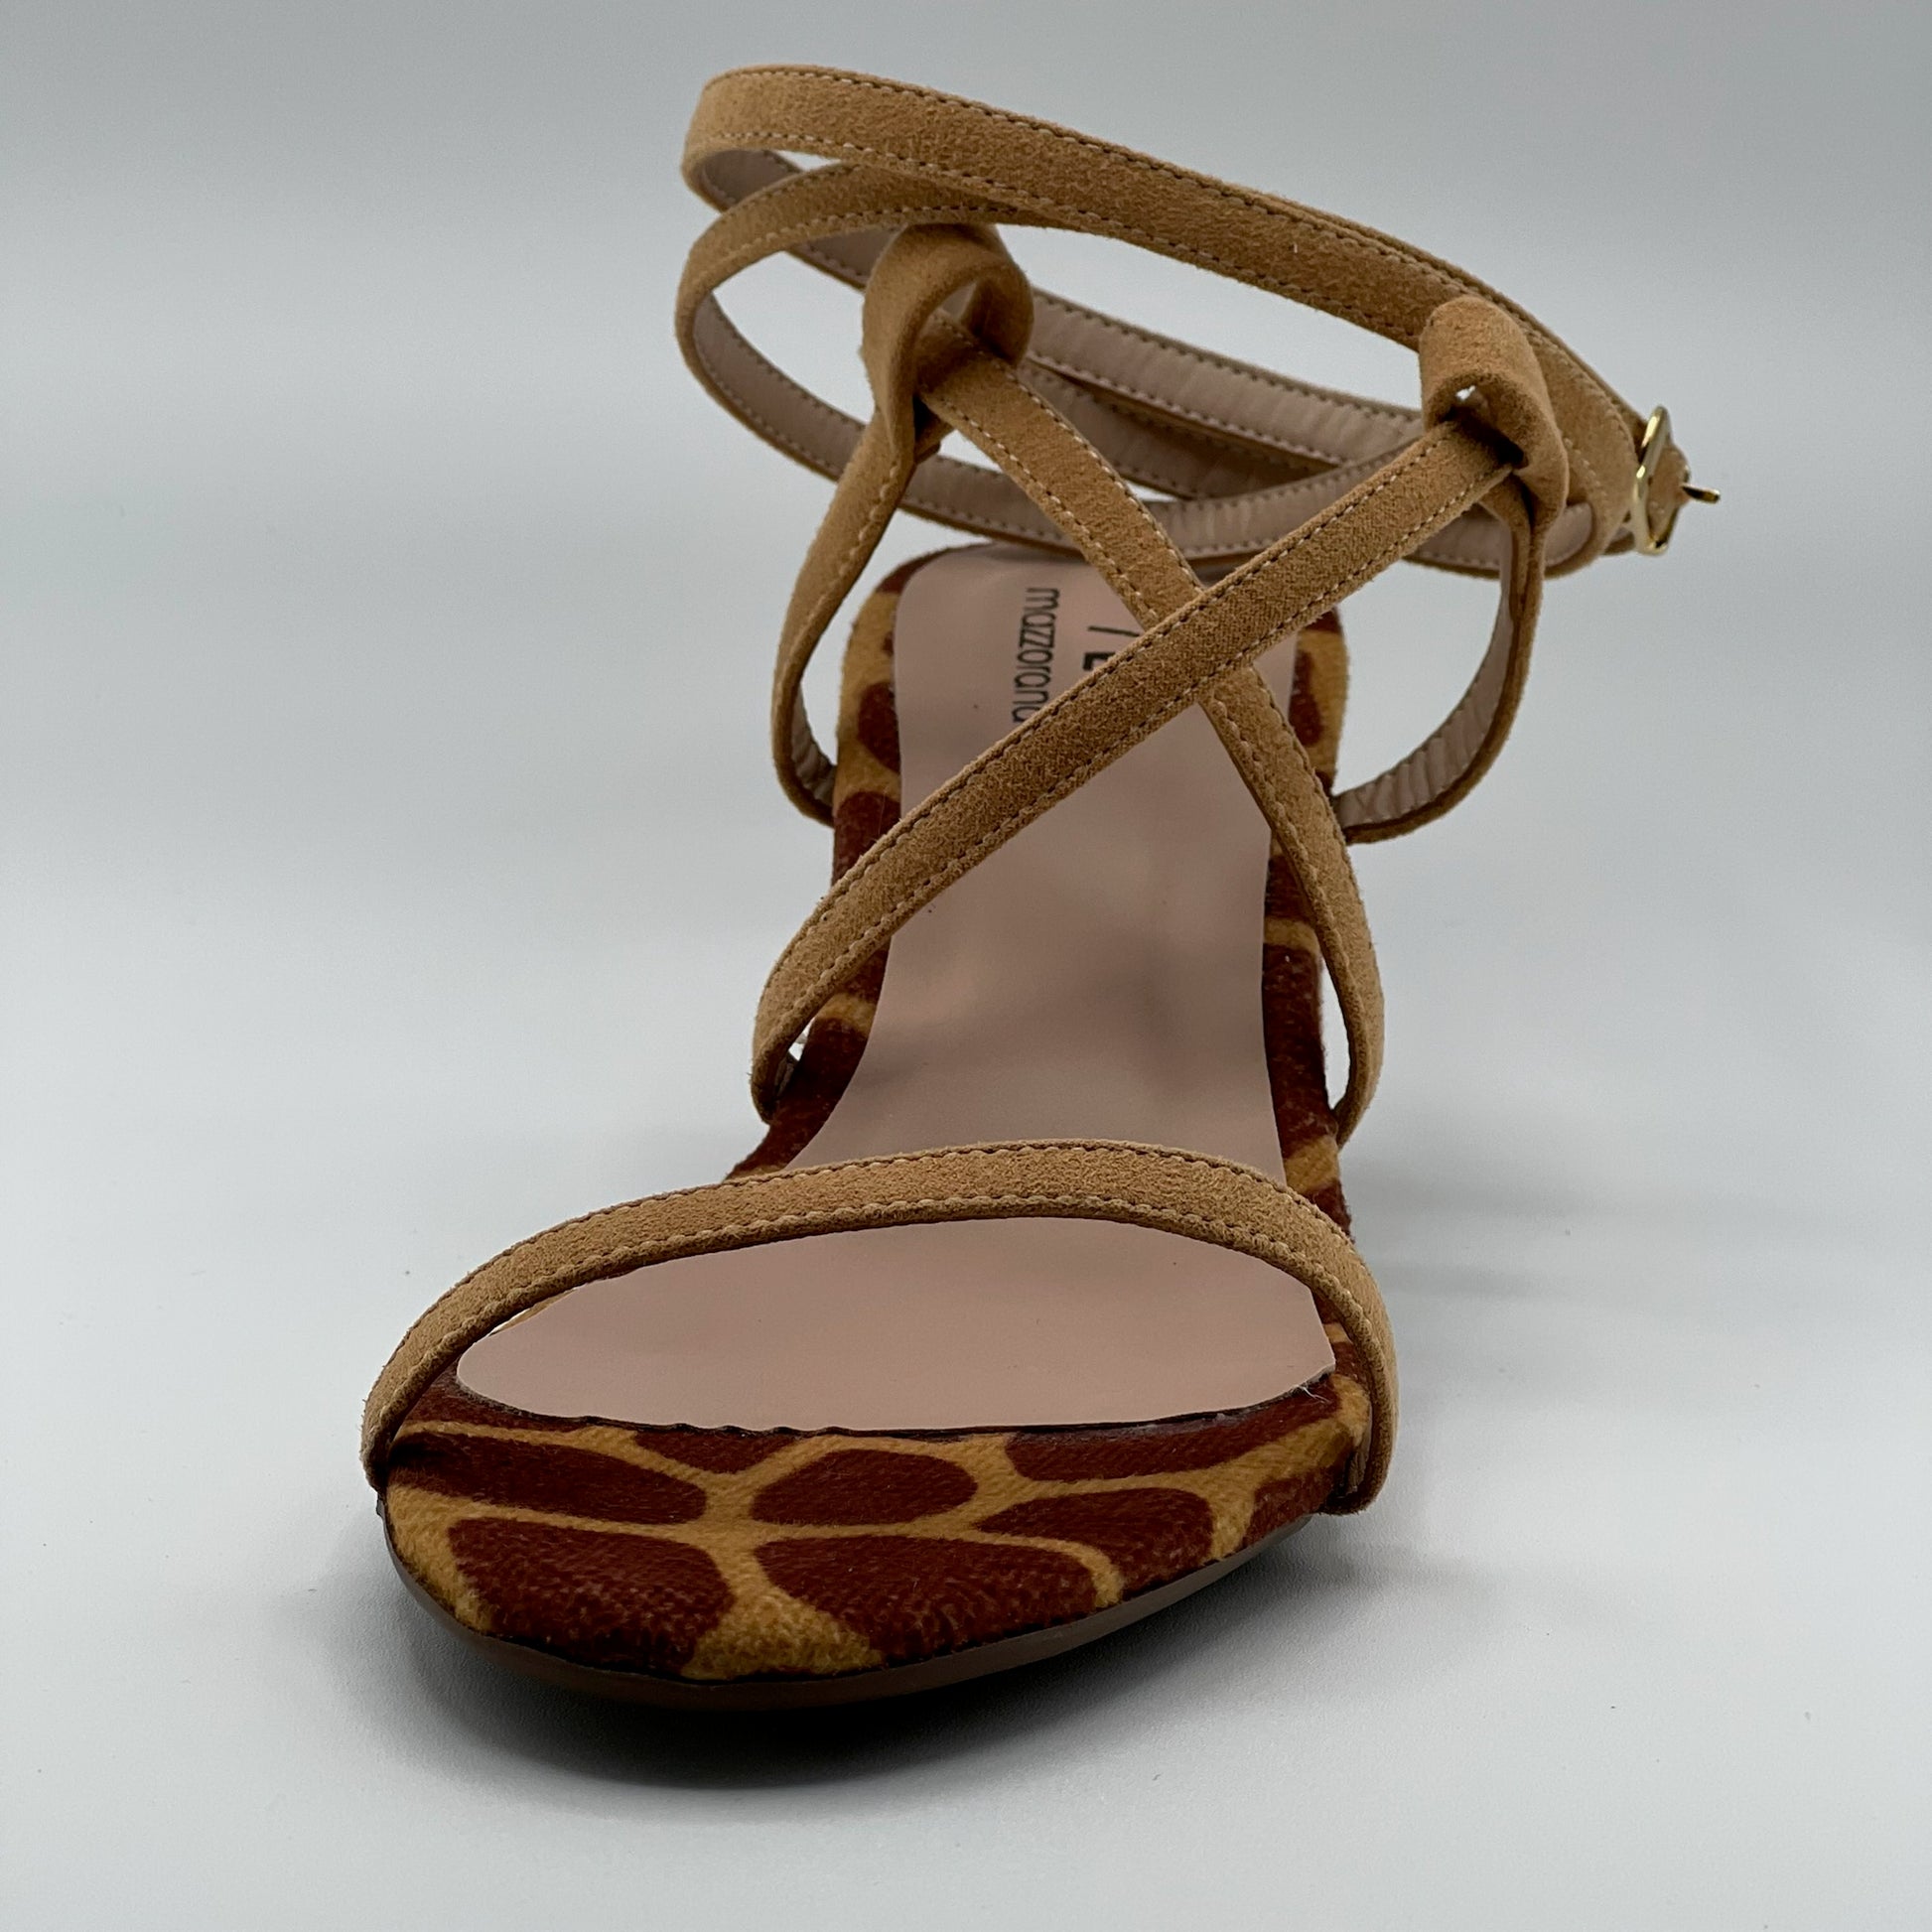 block low heels sandals, giraffe color